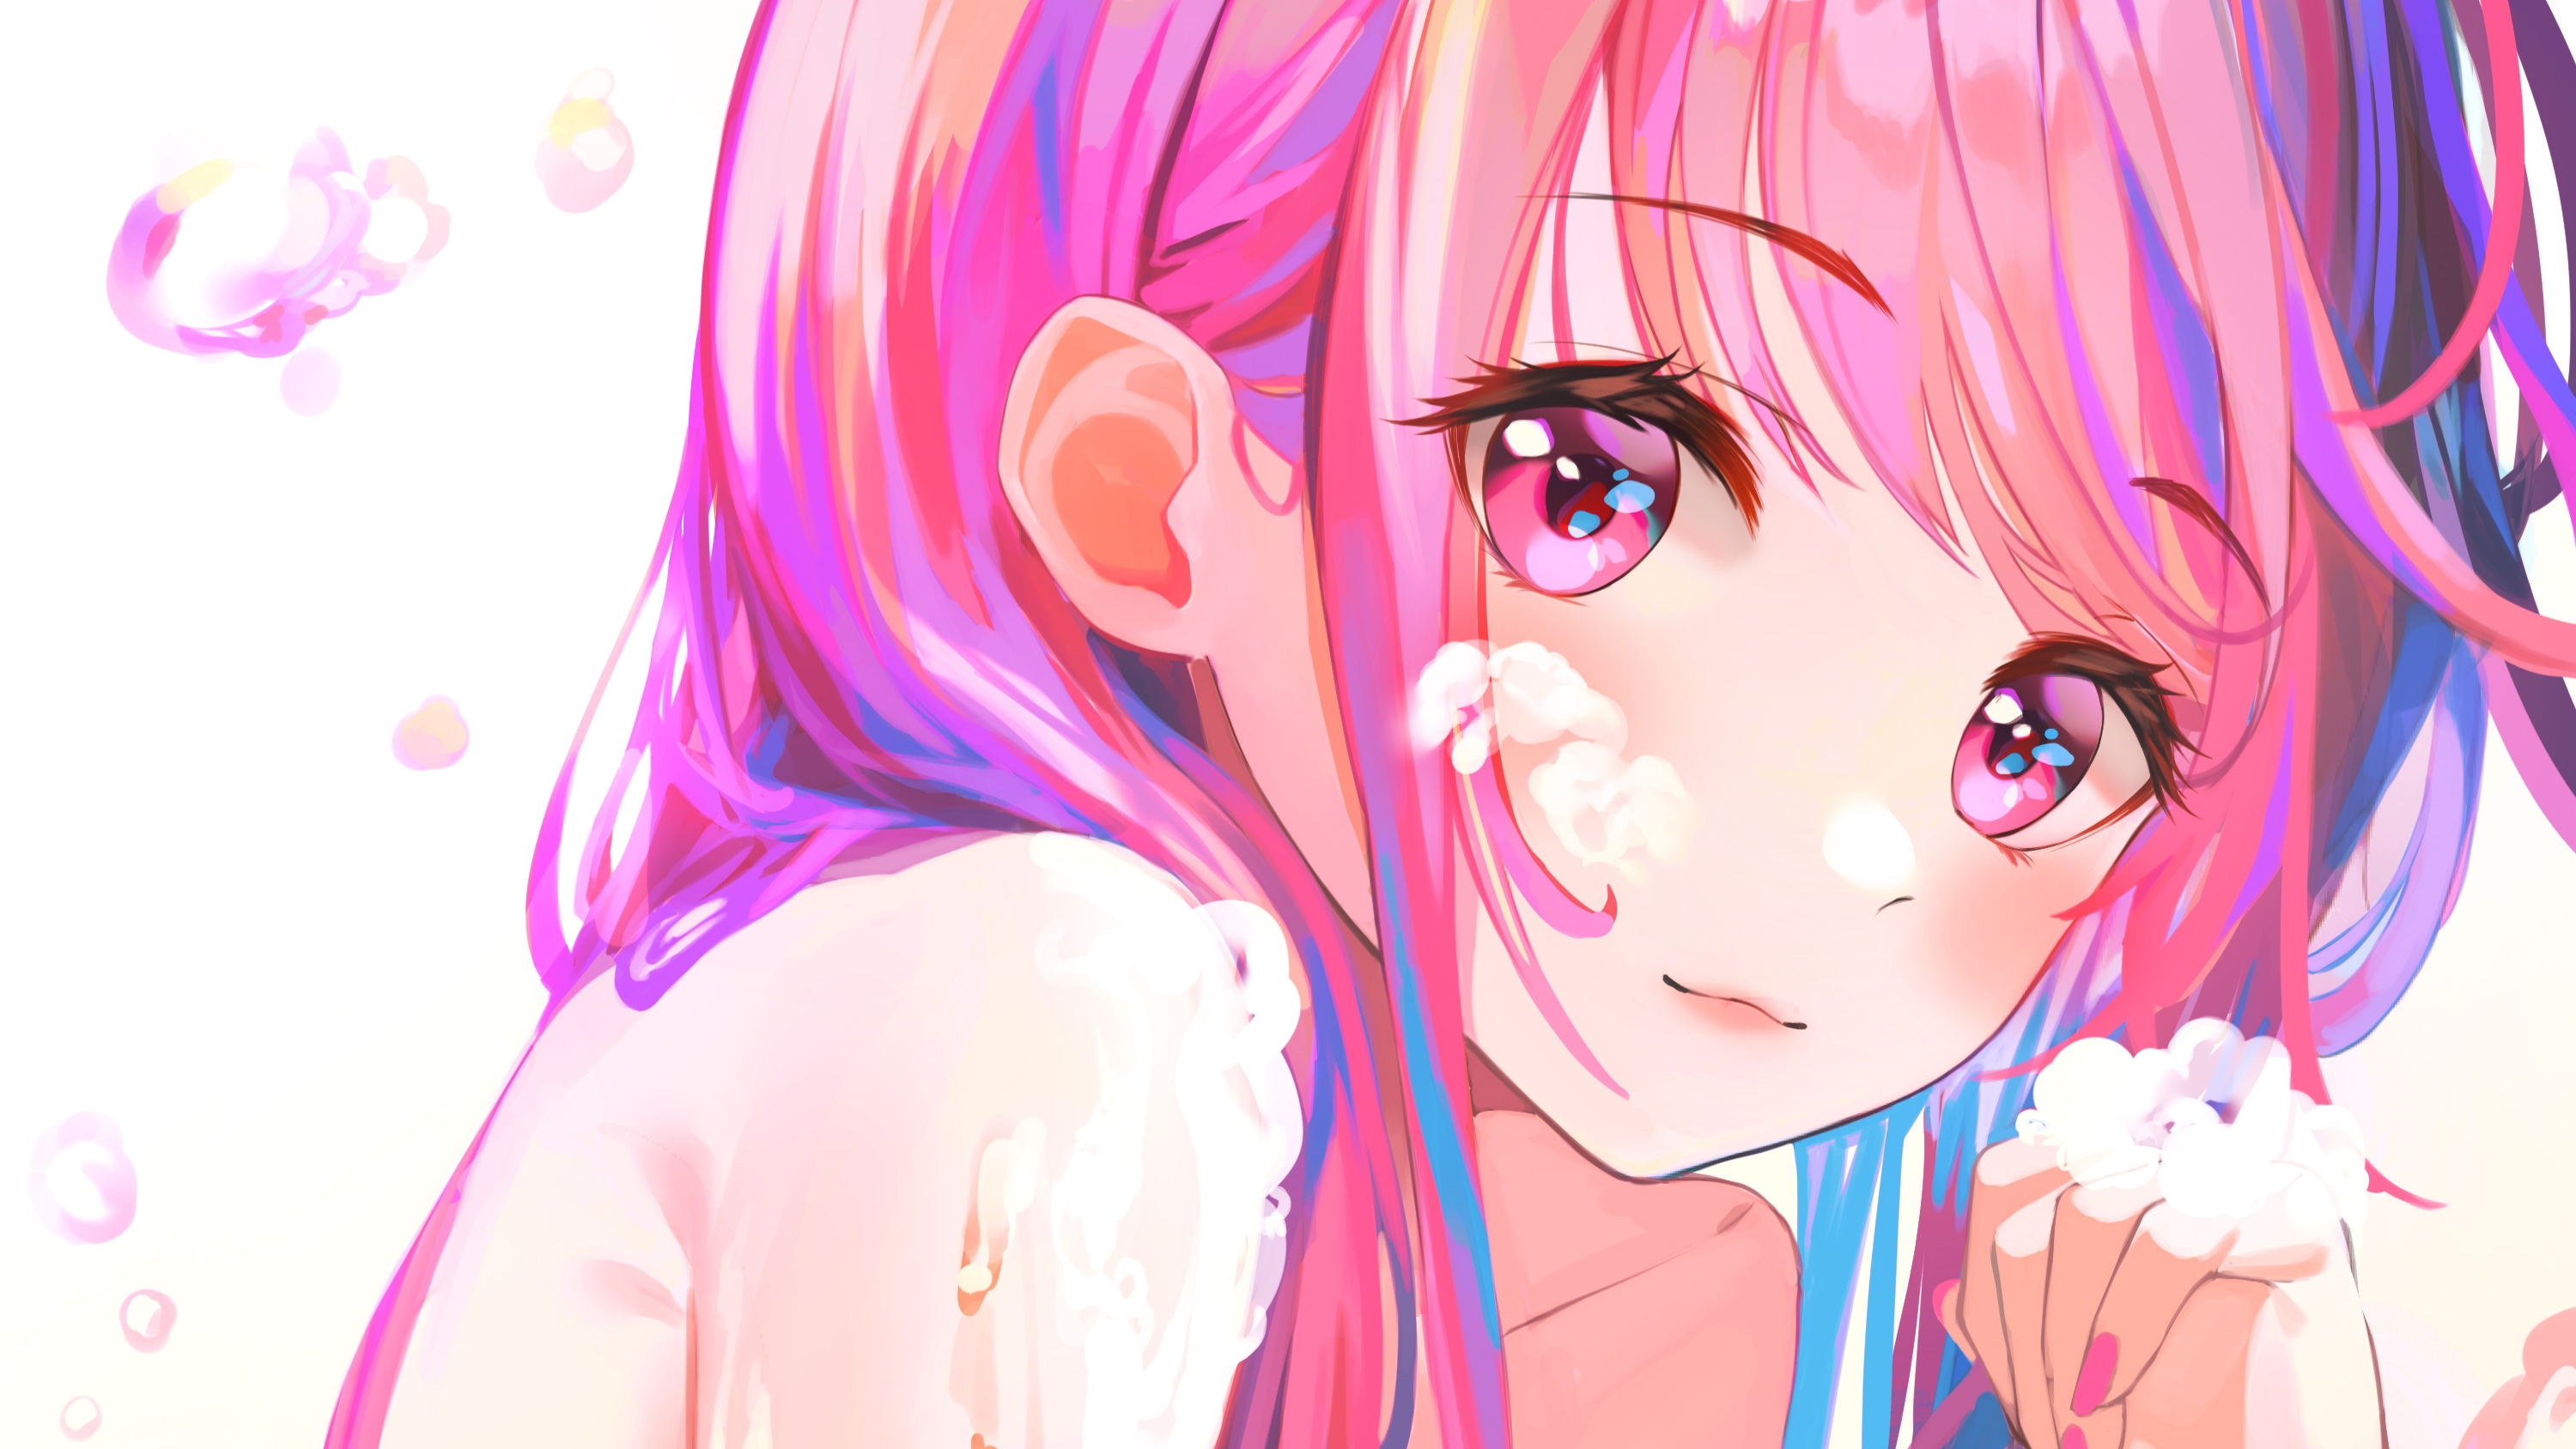 Anime 3000x1688 anime 2D artwork digital art anime girls Munseonghwa pink hair pink eyes